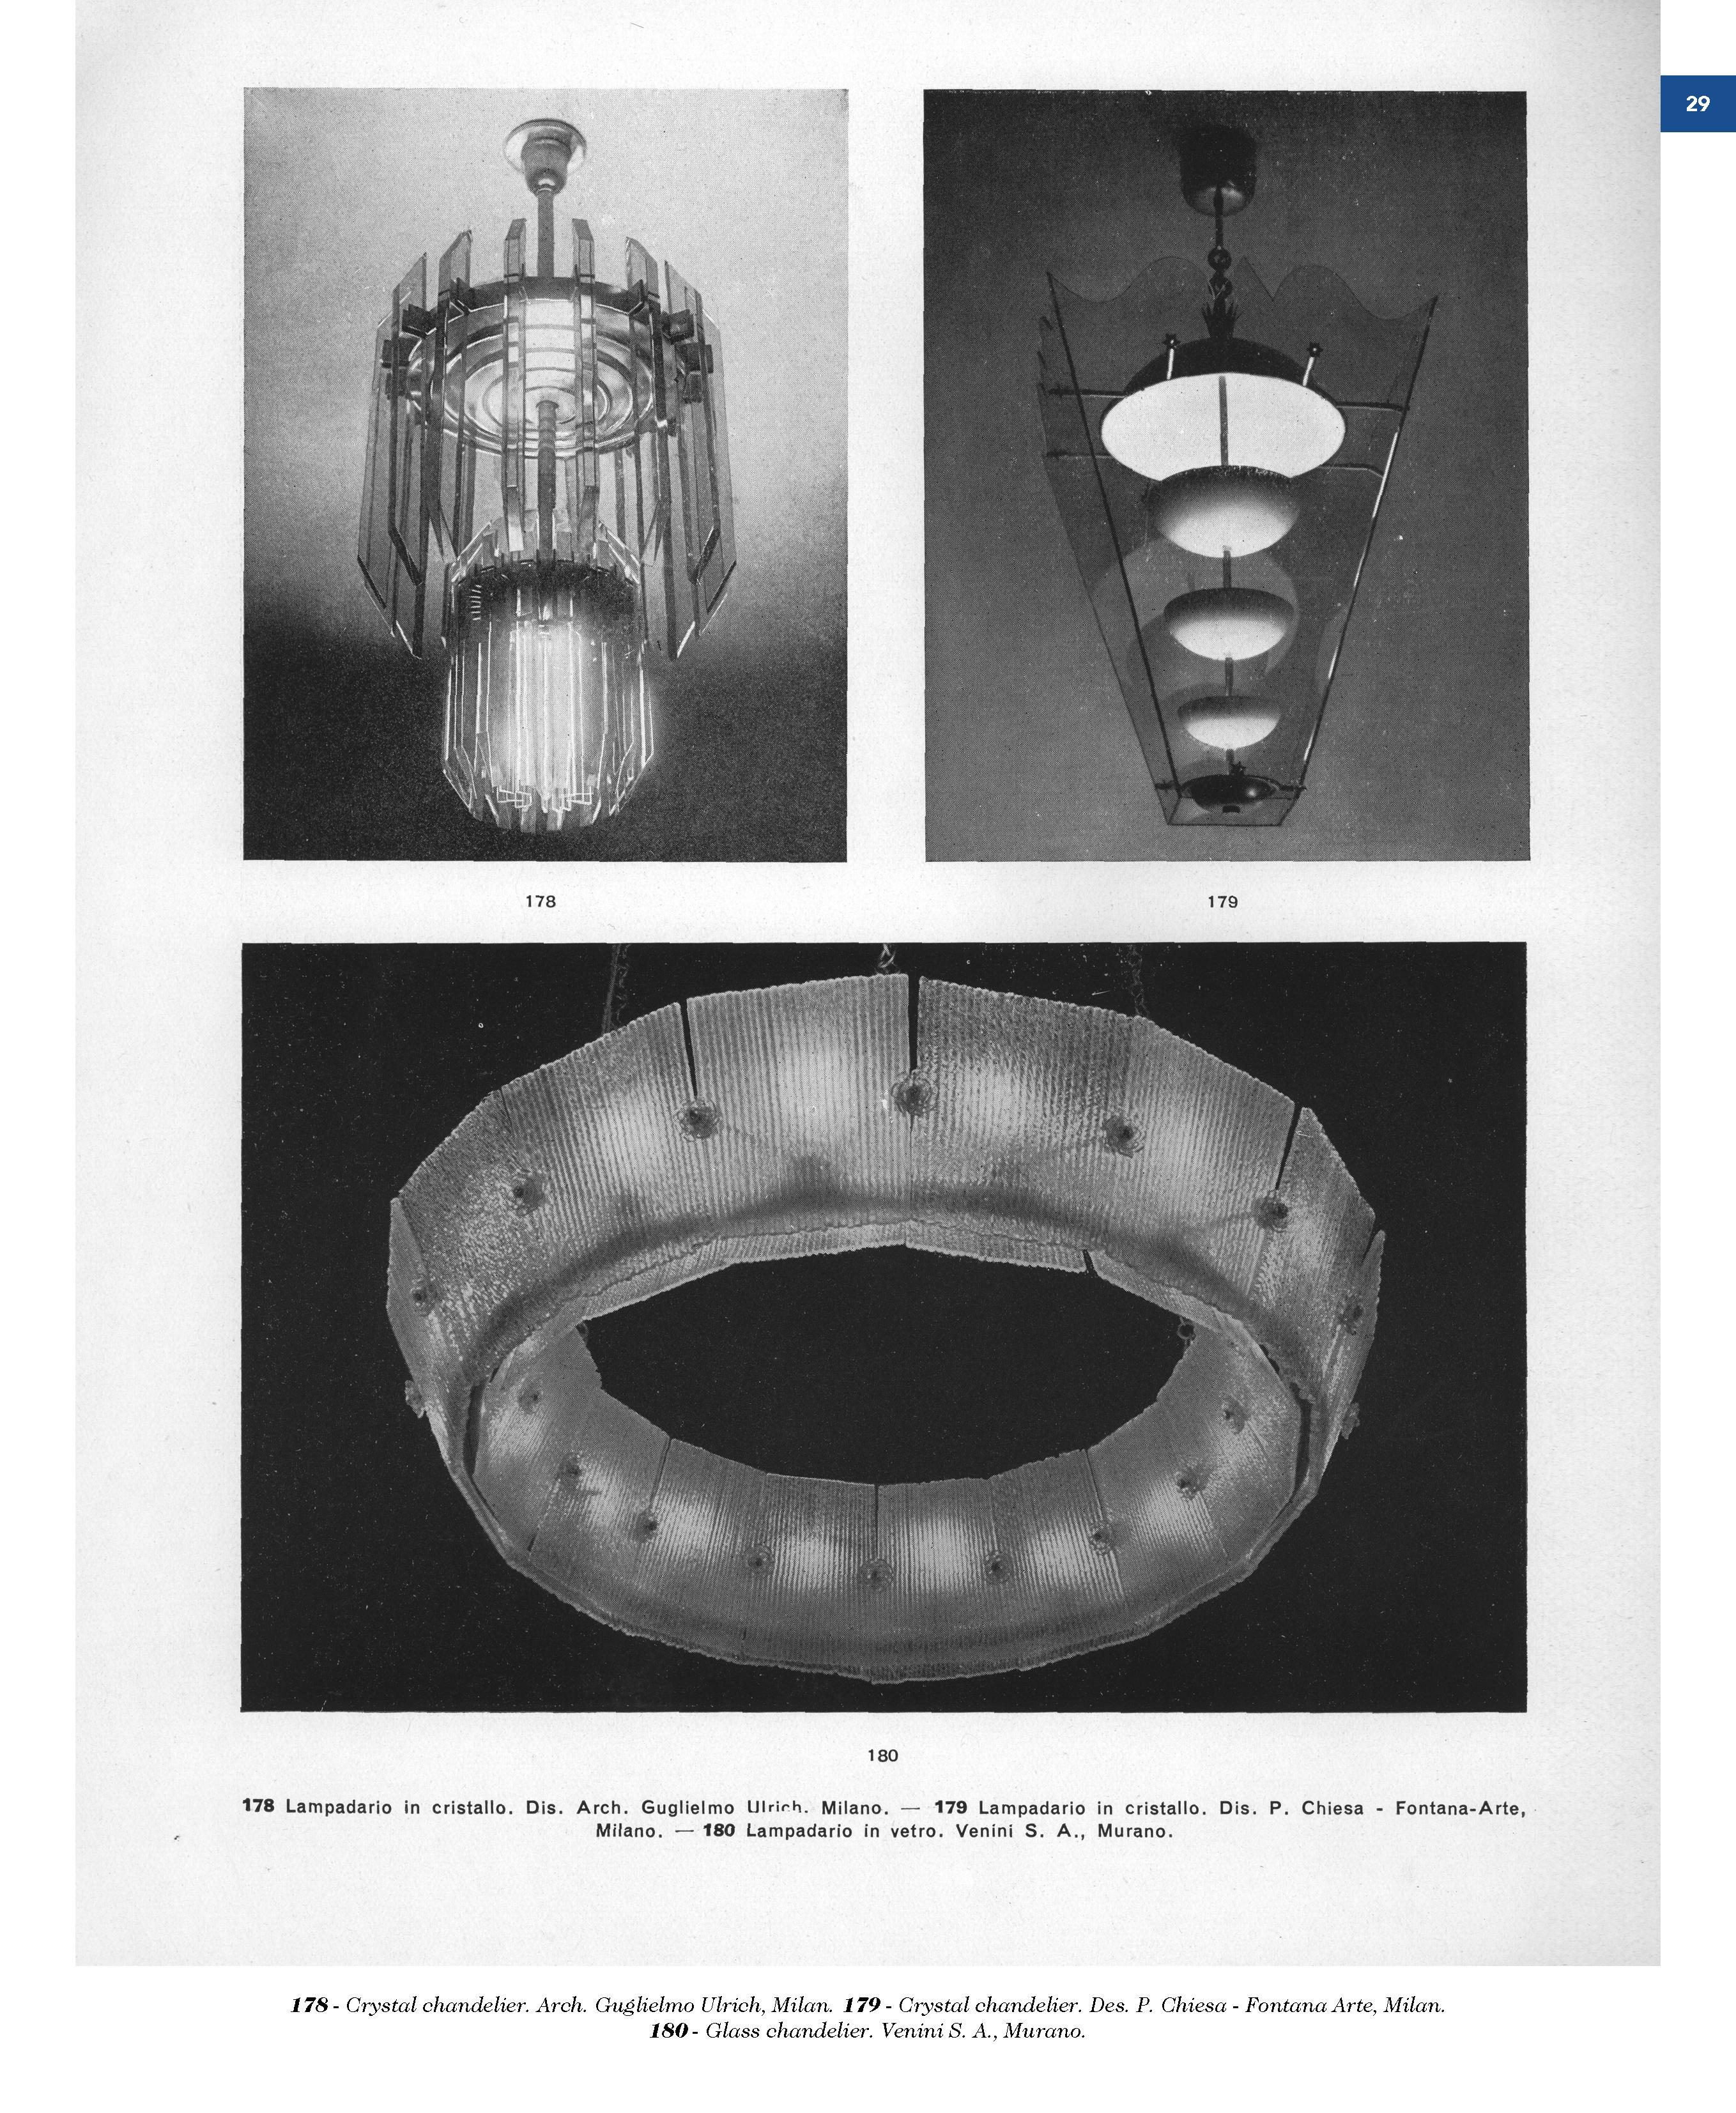 Esempi a été l'une des plus importantes publications de décoration d'intérieur des années 1930 aux années 1970. Plus de 500 modèles de lampes de table, de lampadaires, de plafonniers et d'appliques, 200 designers, 30 ans de production de meubles